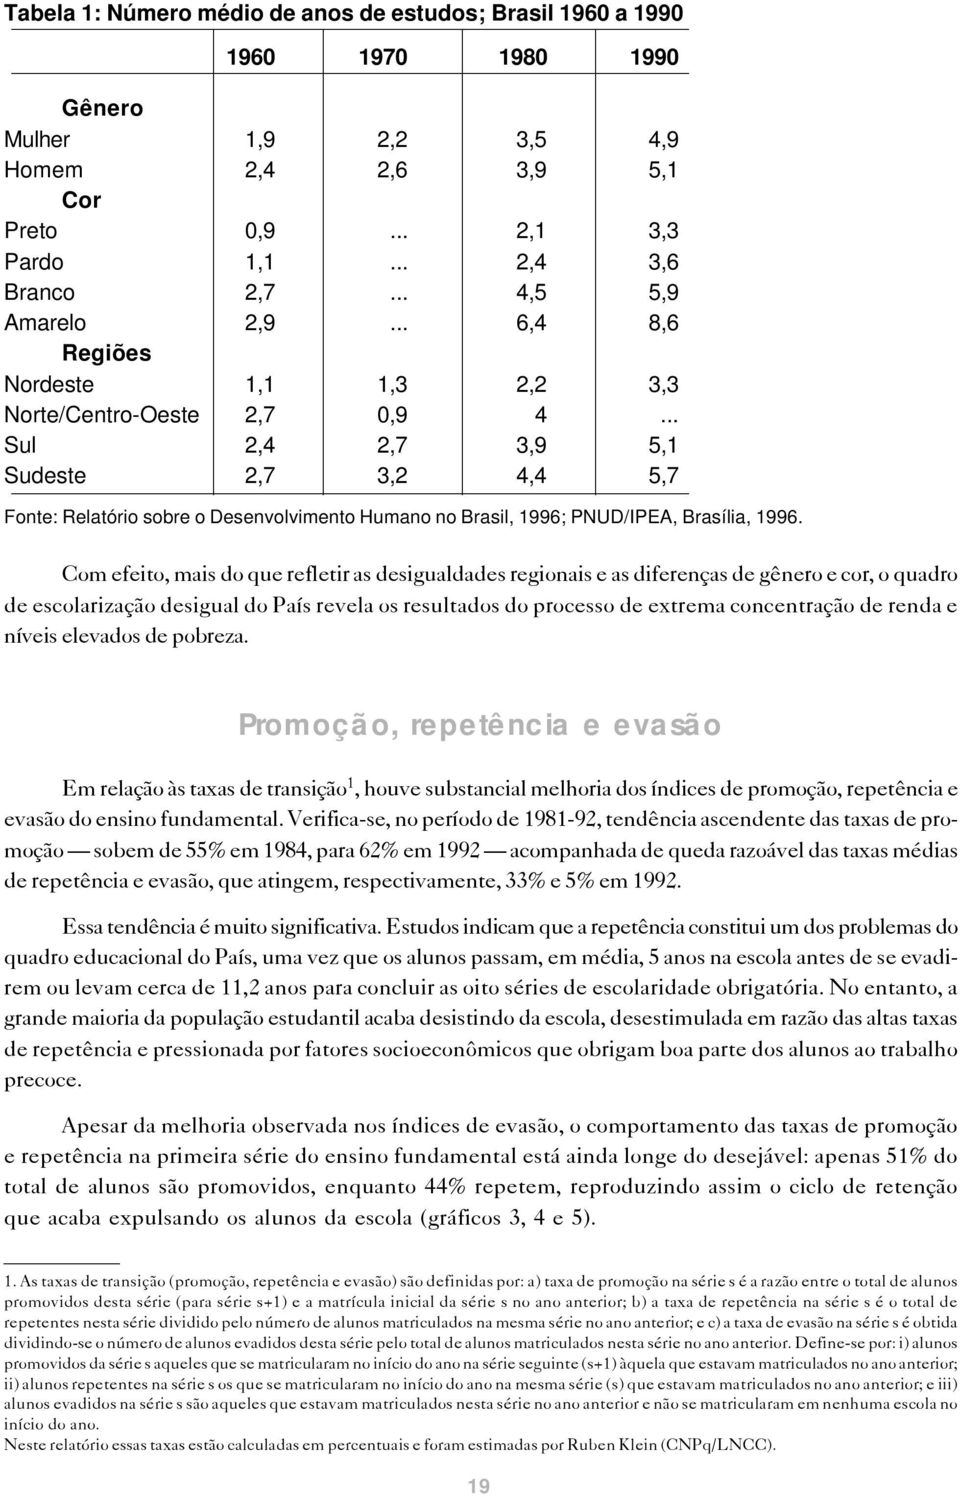 .. Sul 2,4 2,7 3,9 5,1 Sudeste 2,7 3,2 4,4 5,7 Fonte: Relatório sobre o Desenvolvimento Humano no Brasil, 1996; PNUD/IPEA, Brasília, 1996.